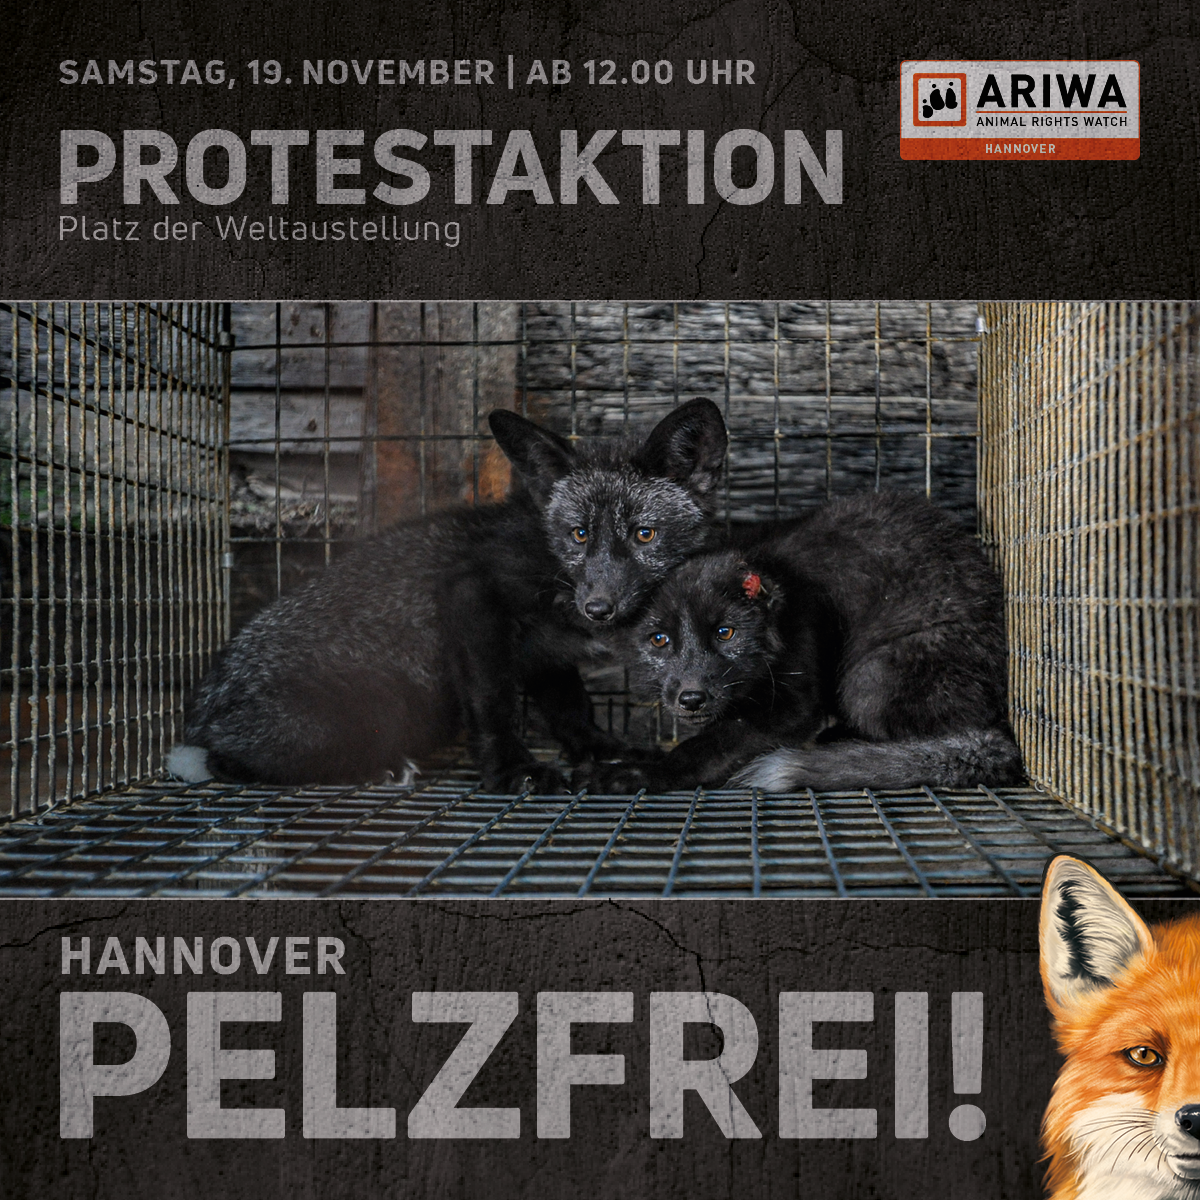 Hannover Pelzfrei!